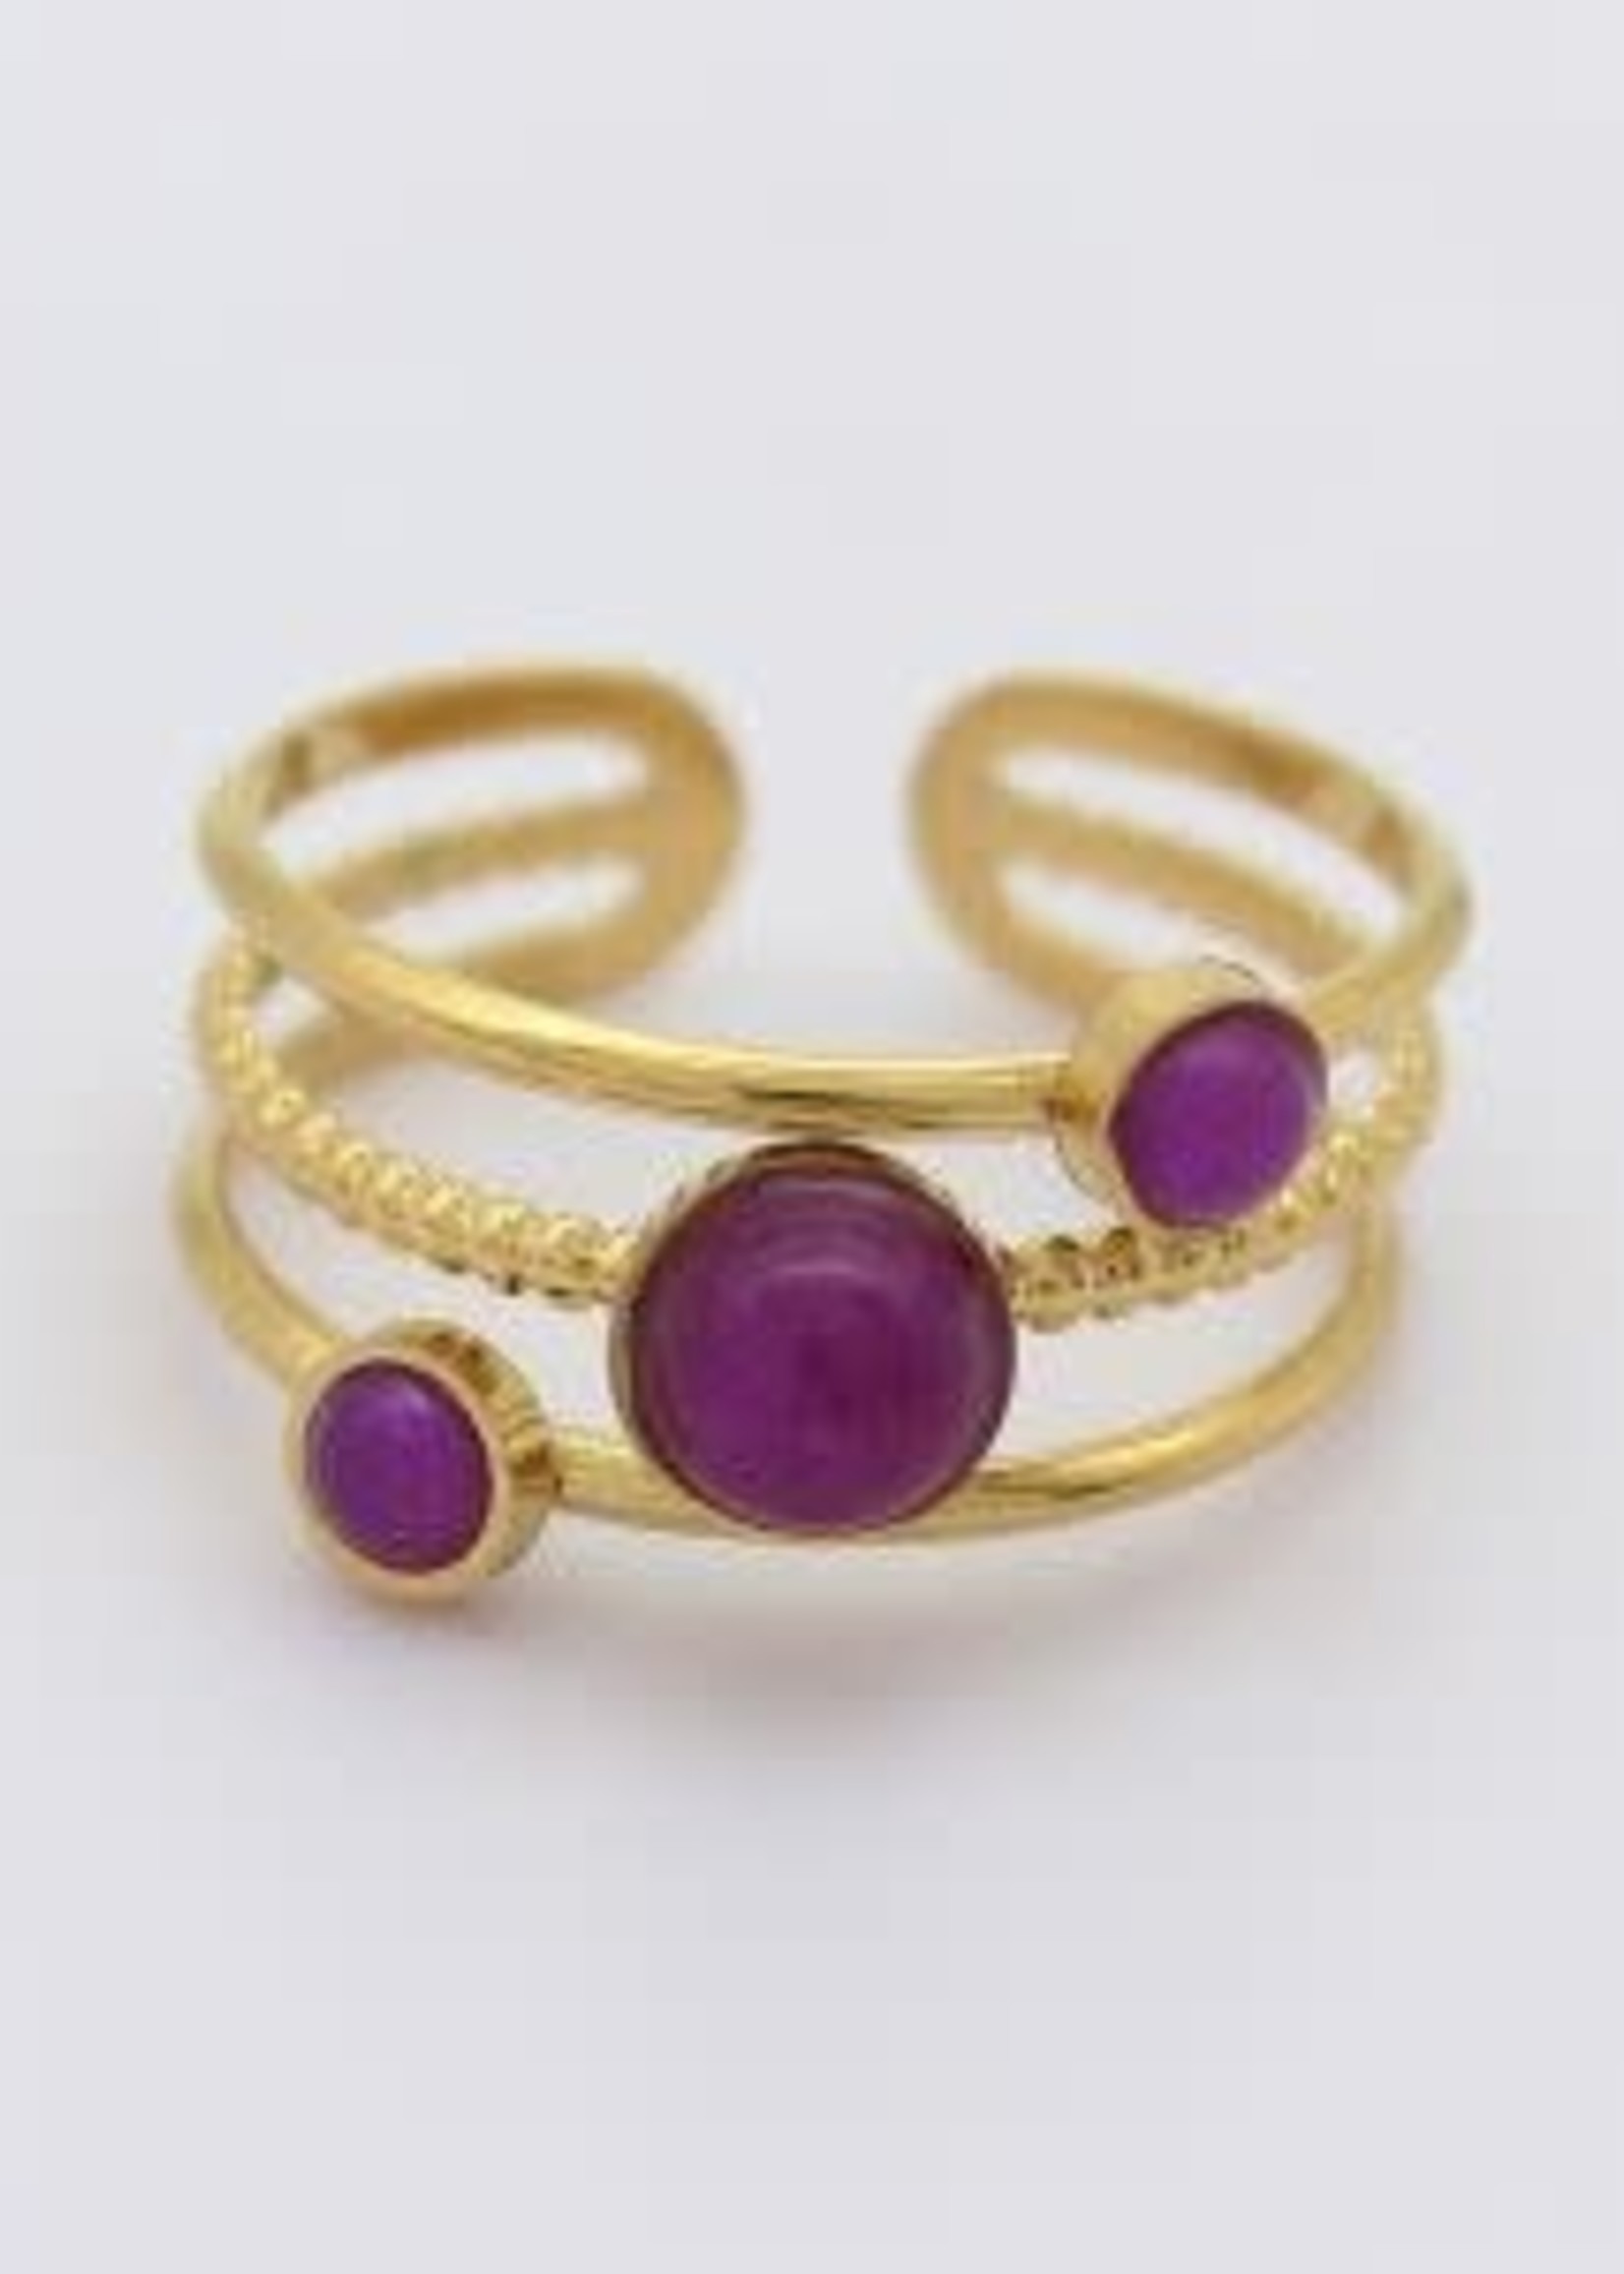 Heart To Get Jewelry Heart To Get Jewelry - Ring Stainless Steel 04 - Gold/Violet